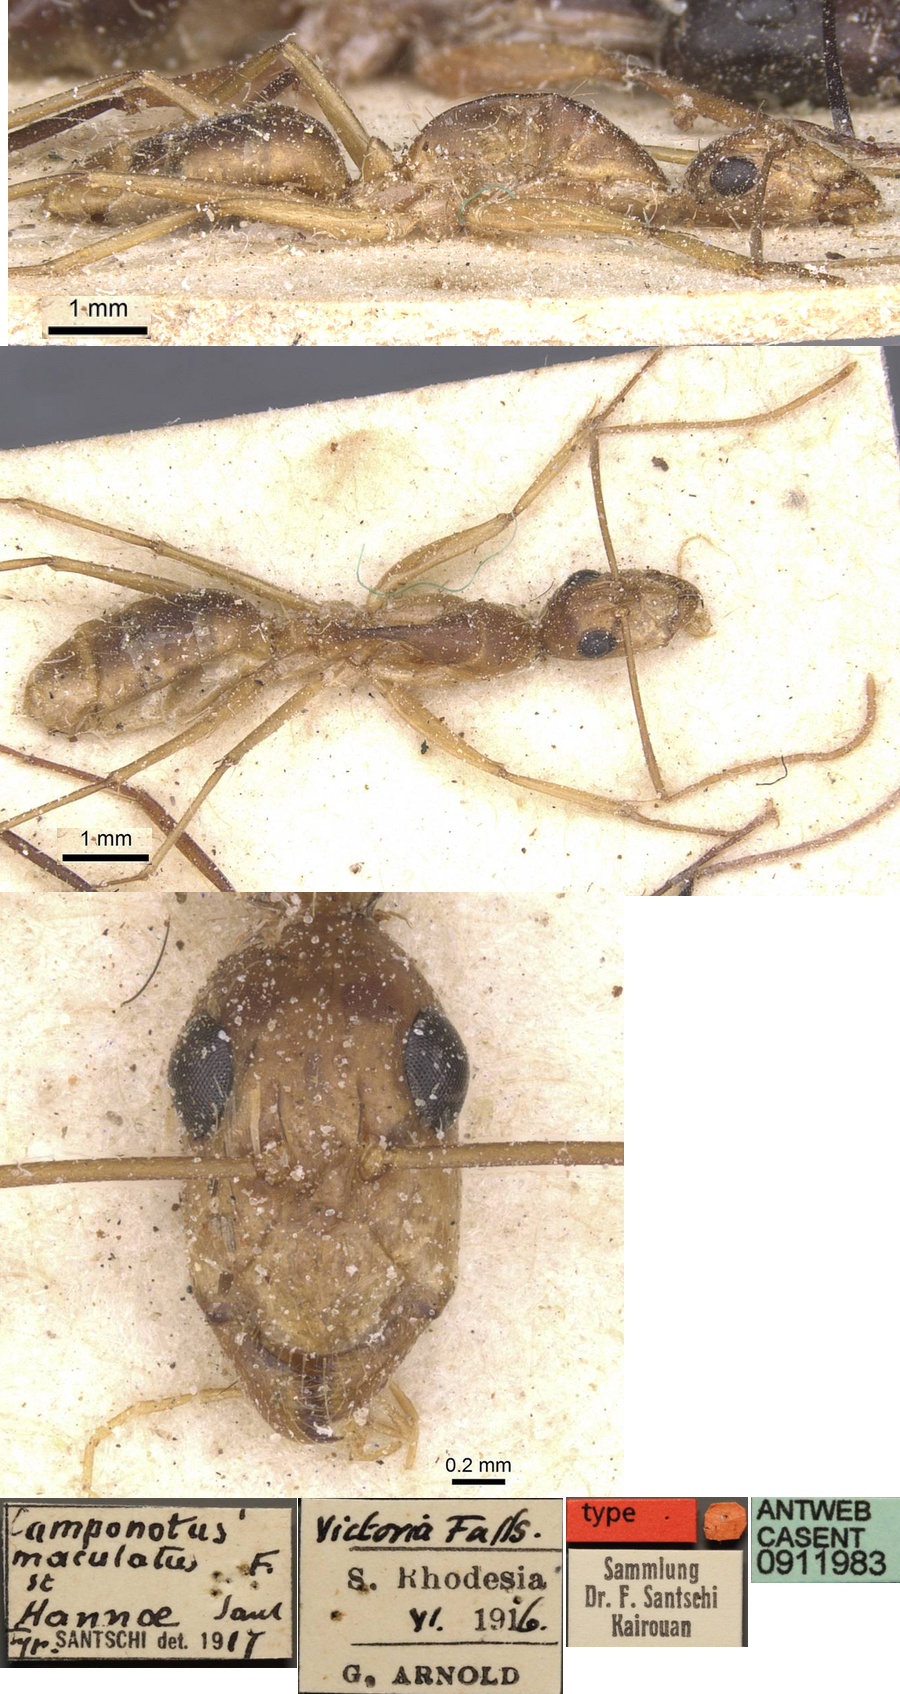 Camponotus hannae major